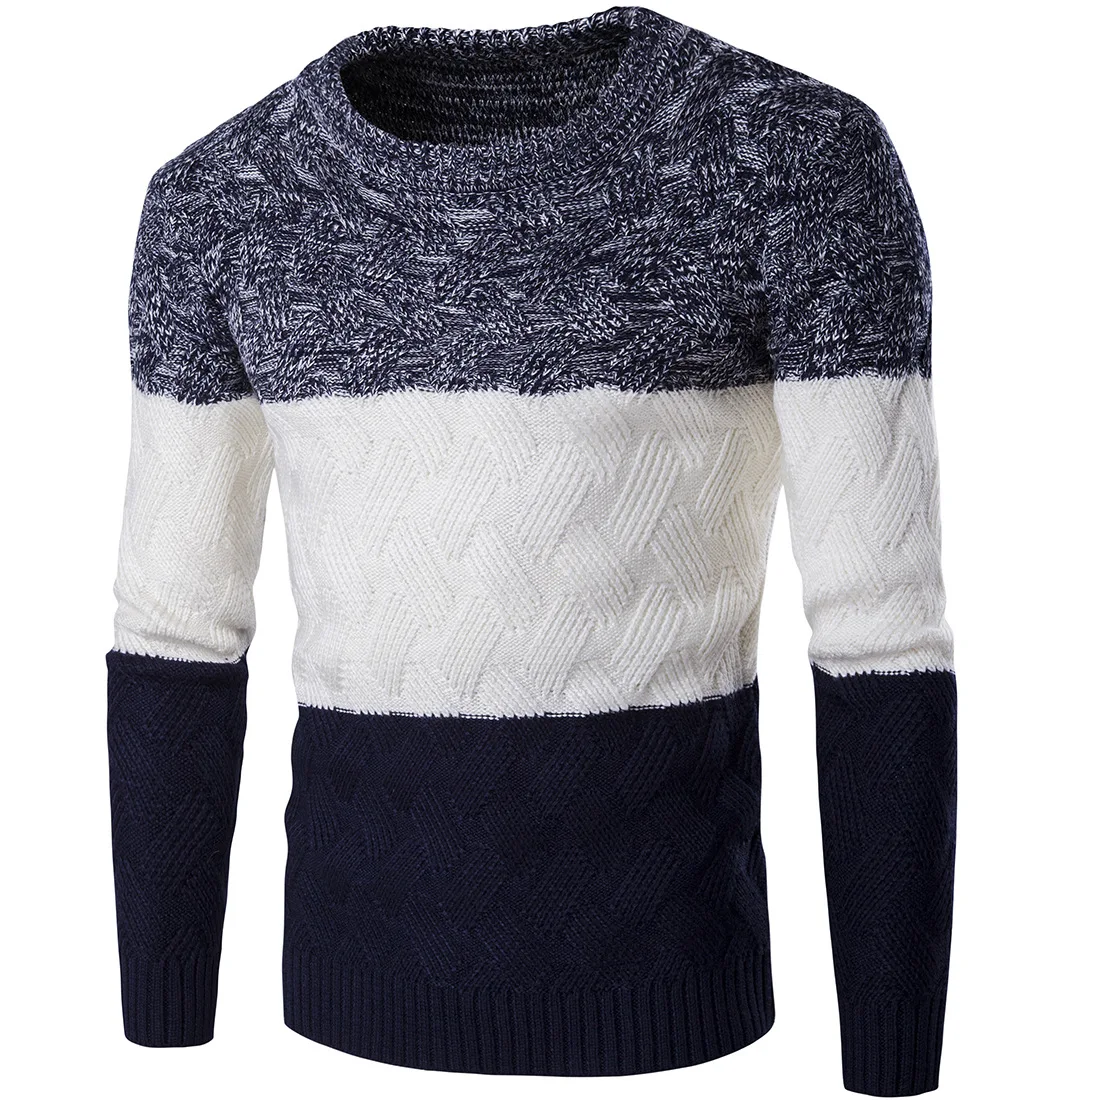 Пуловер Мужчины Прямые Продажи Нового Прибытия О-Образным Вырезом Случайный Пуловеры 2017 мужской Зимний Толстый Теплый Свитер